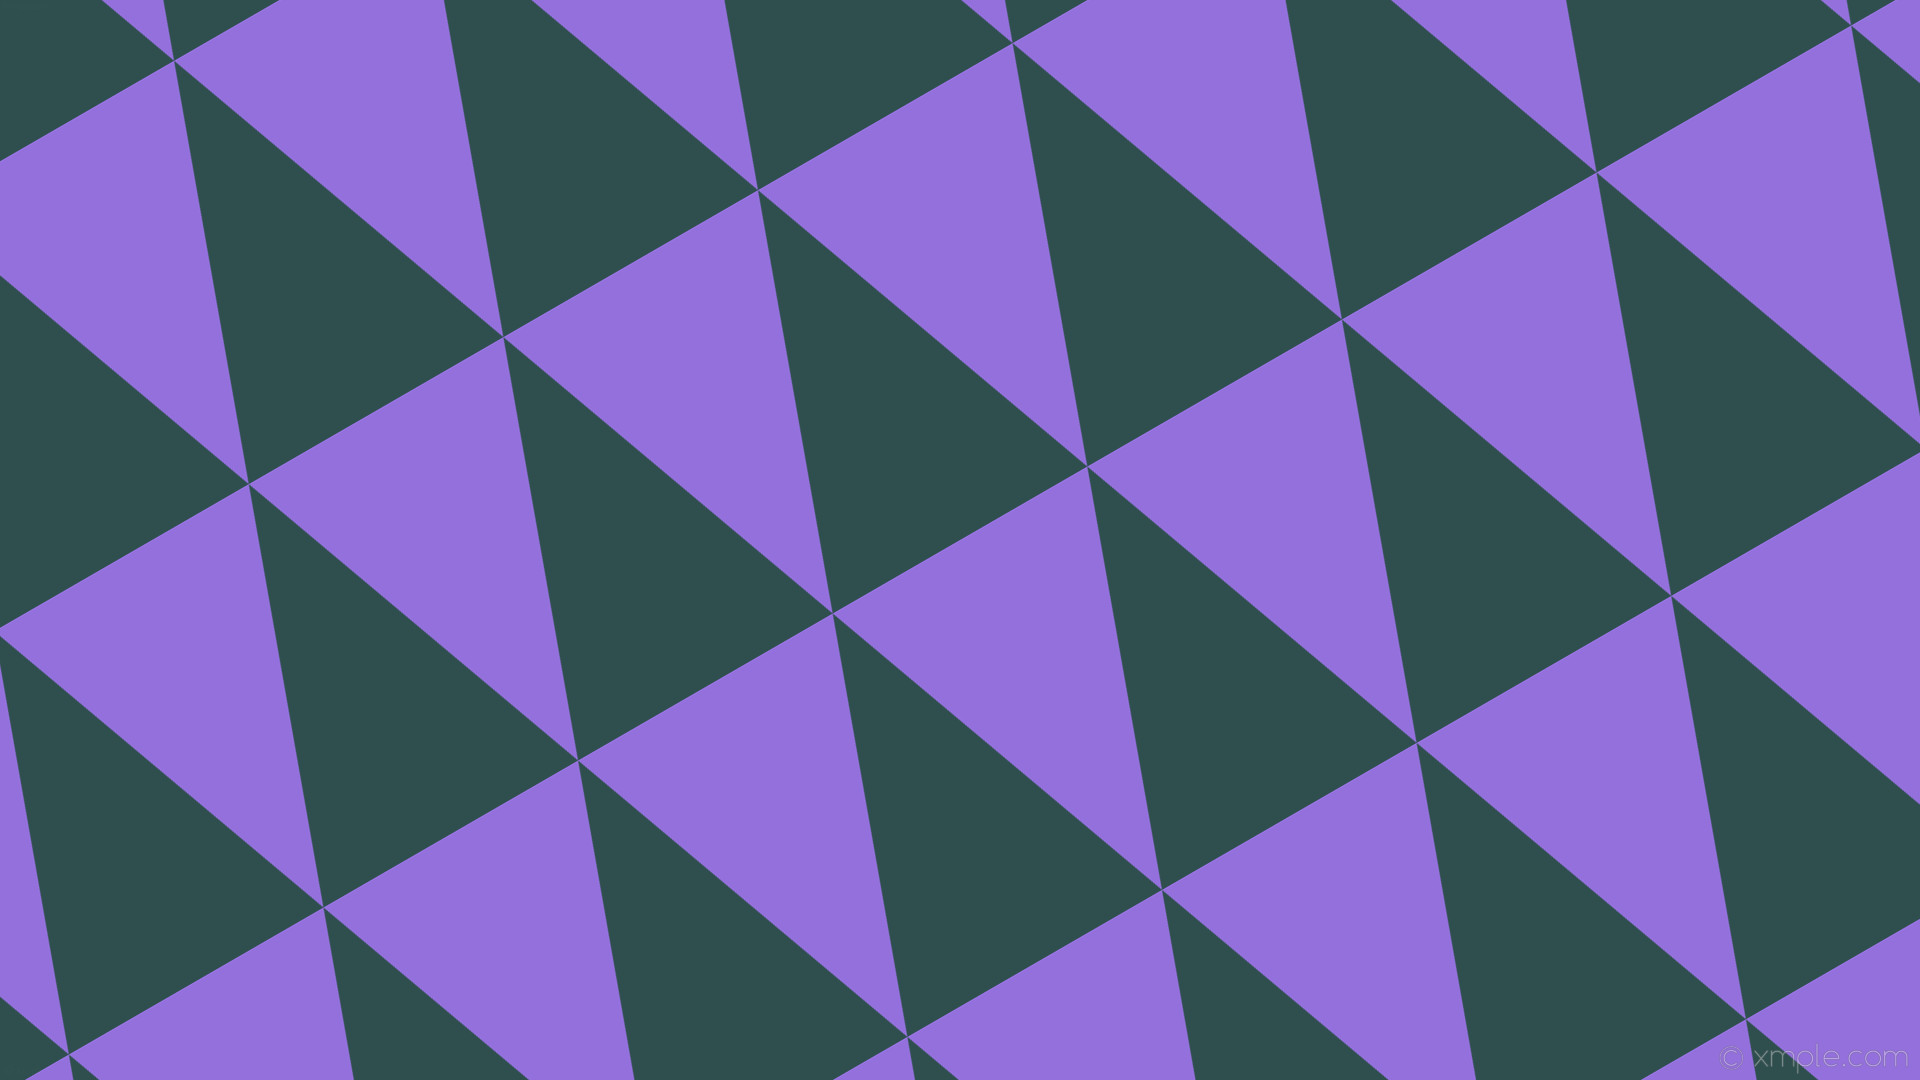 1920x1080 wallpaper grey purple triangle dark slate gray medium purple #2f4f4f  #9370db 210Â° 294px